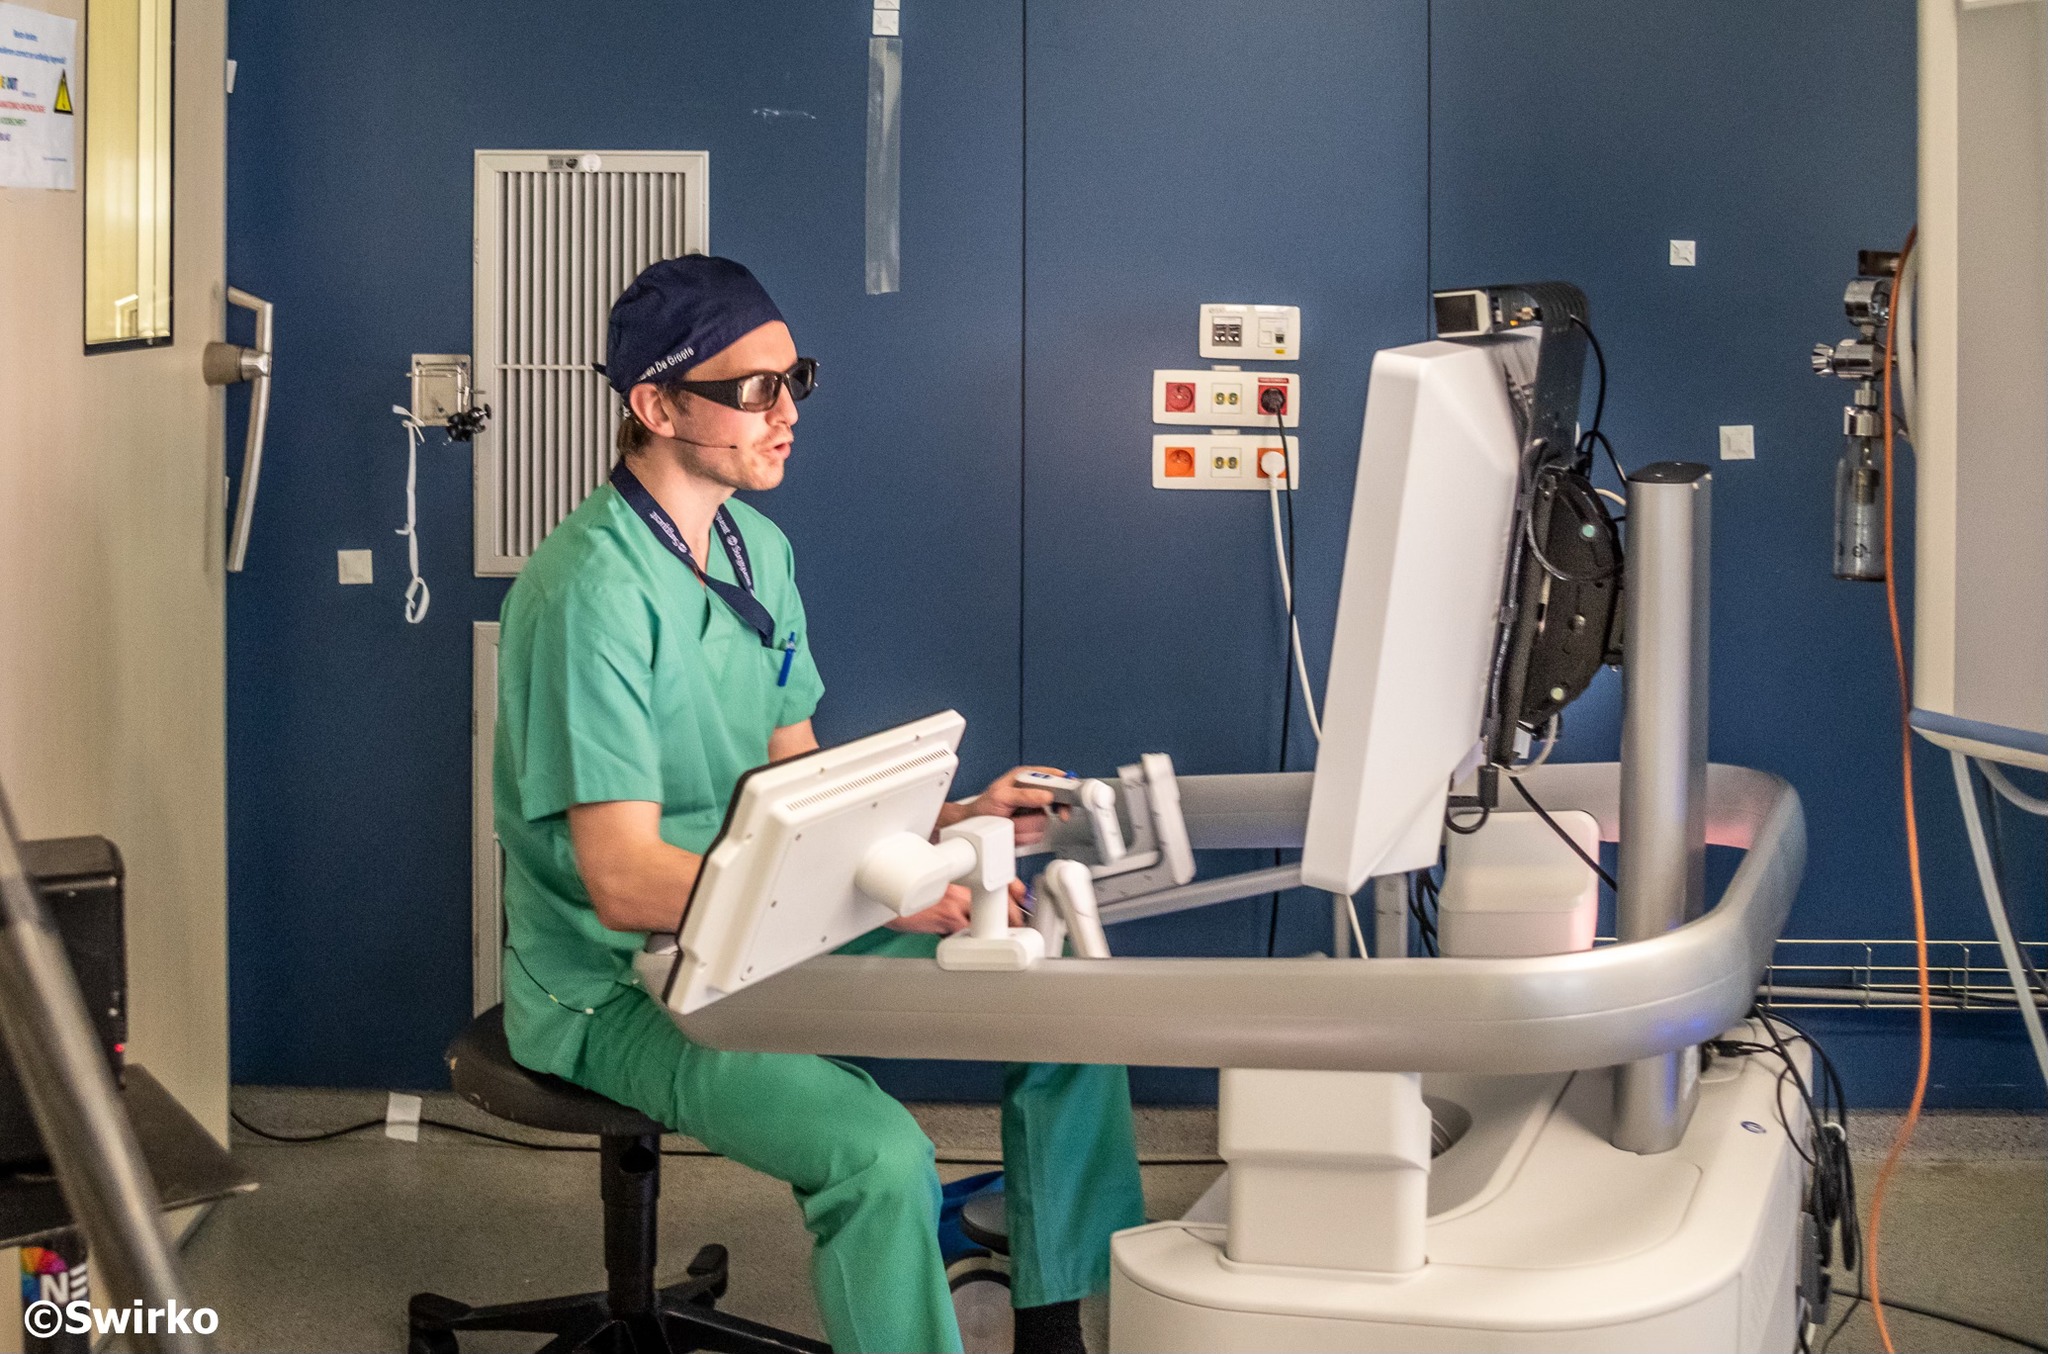 Nieuwe robot-chirurgische opleiding van Orsi Academy beoogt halvering van complicaties